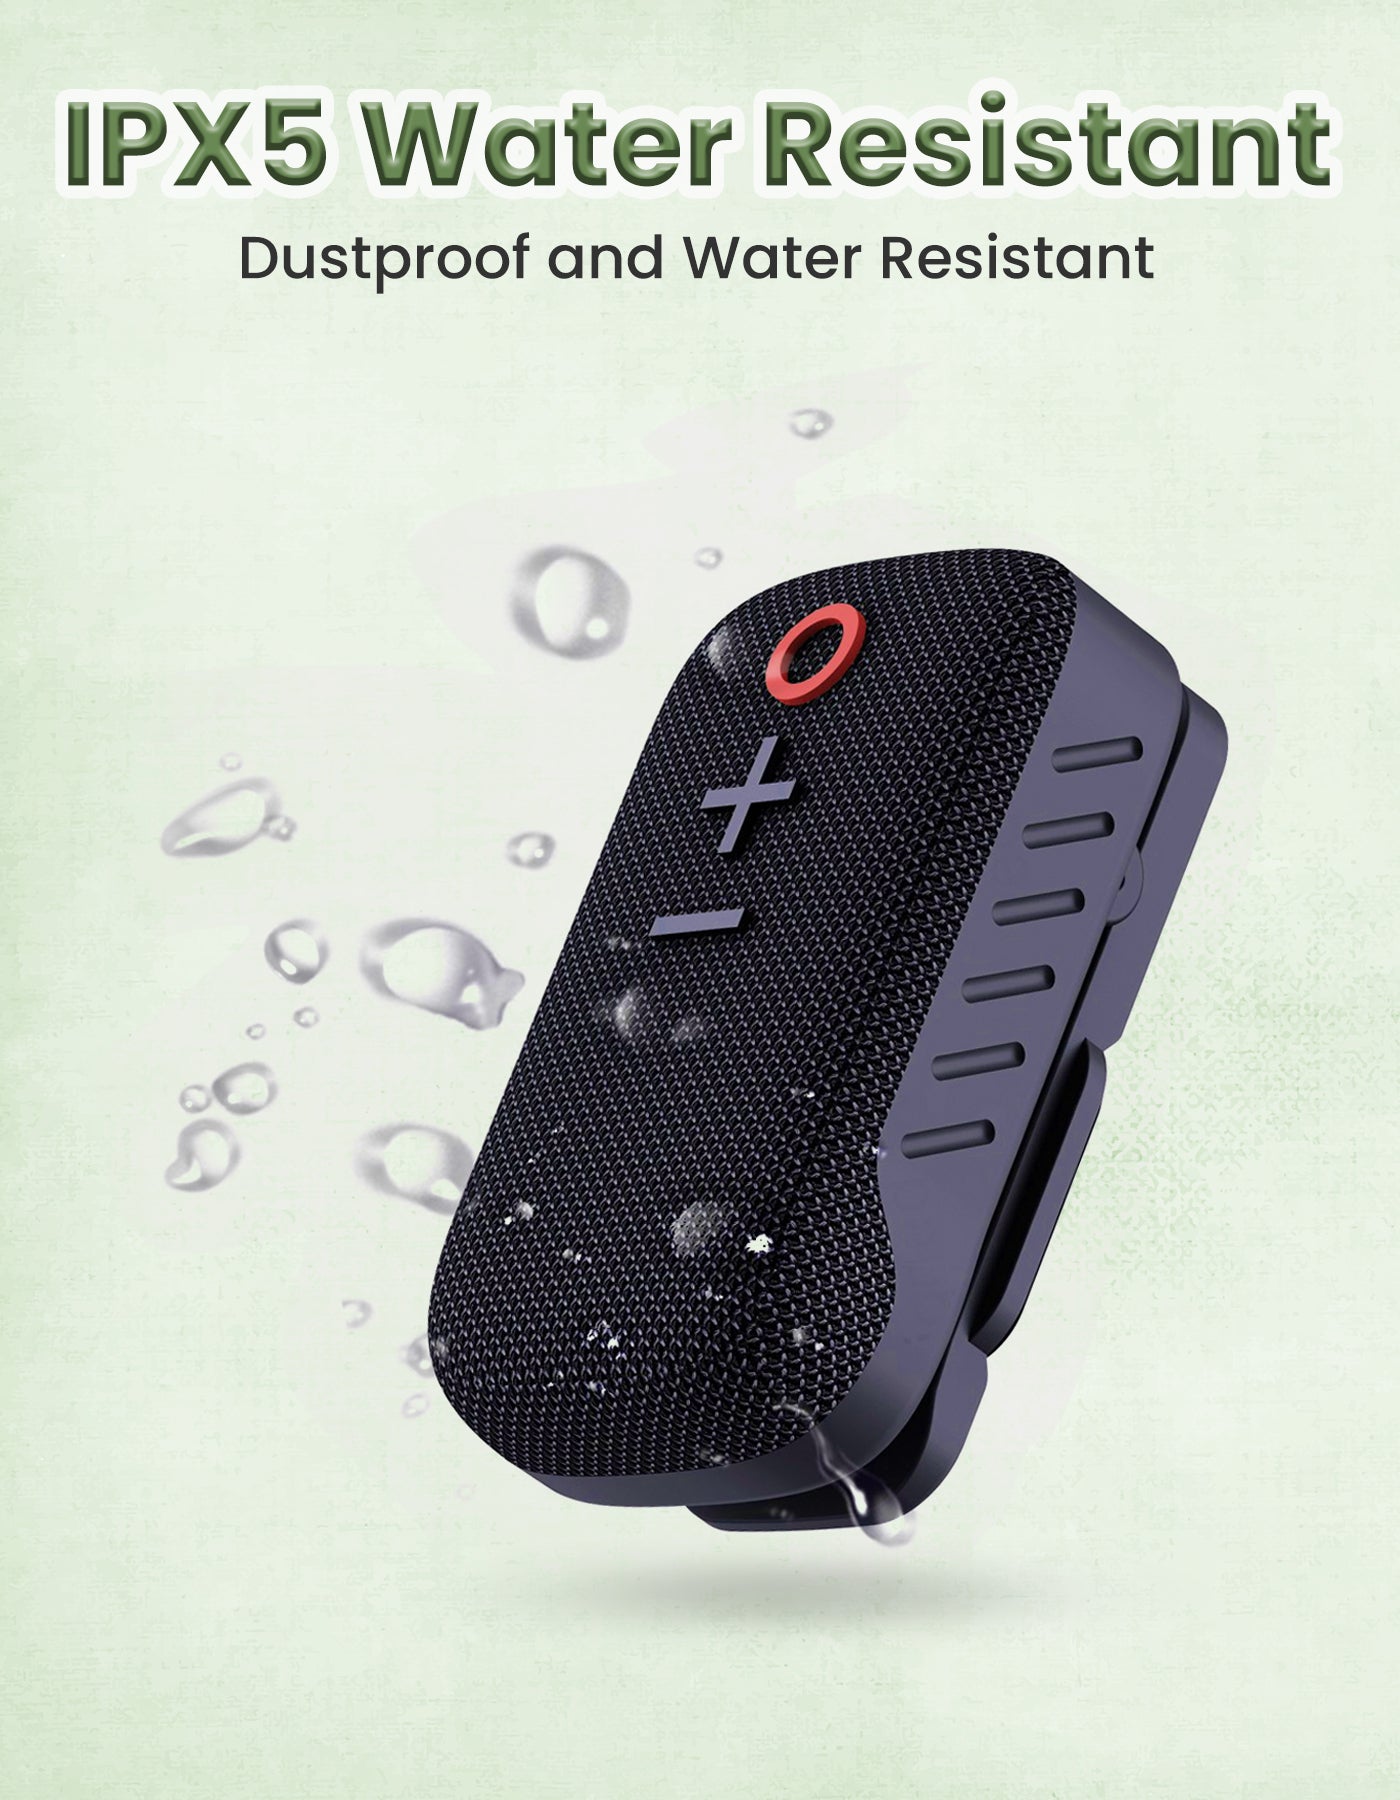 Portronics talk three 2w wearable wireless speaker is dustproof and water resistant